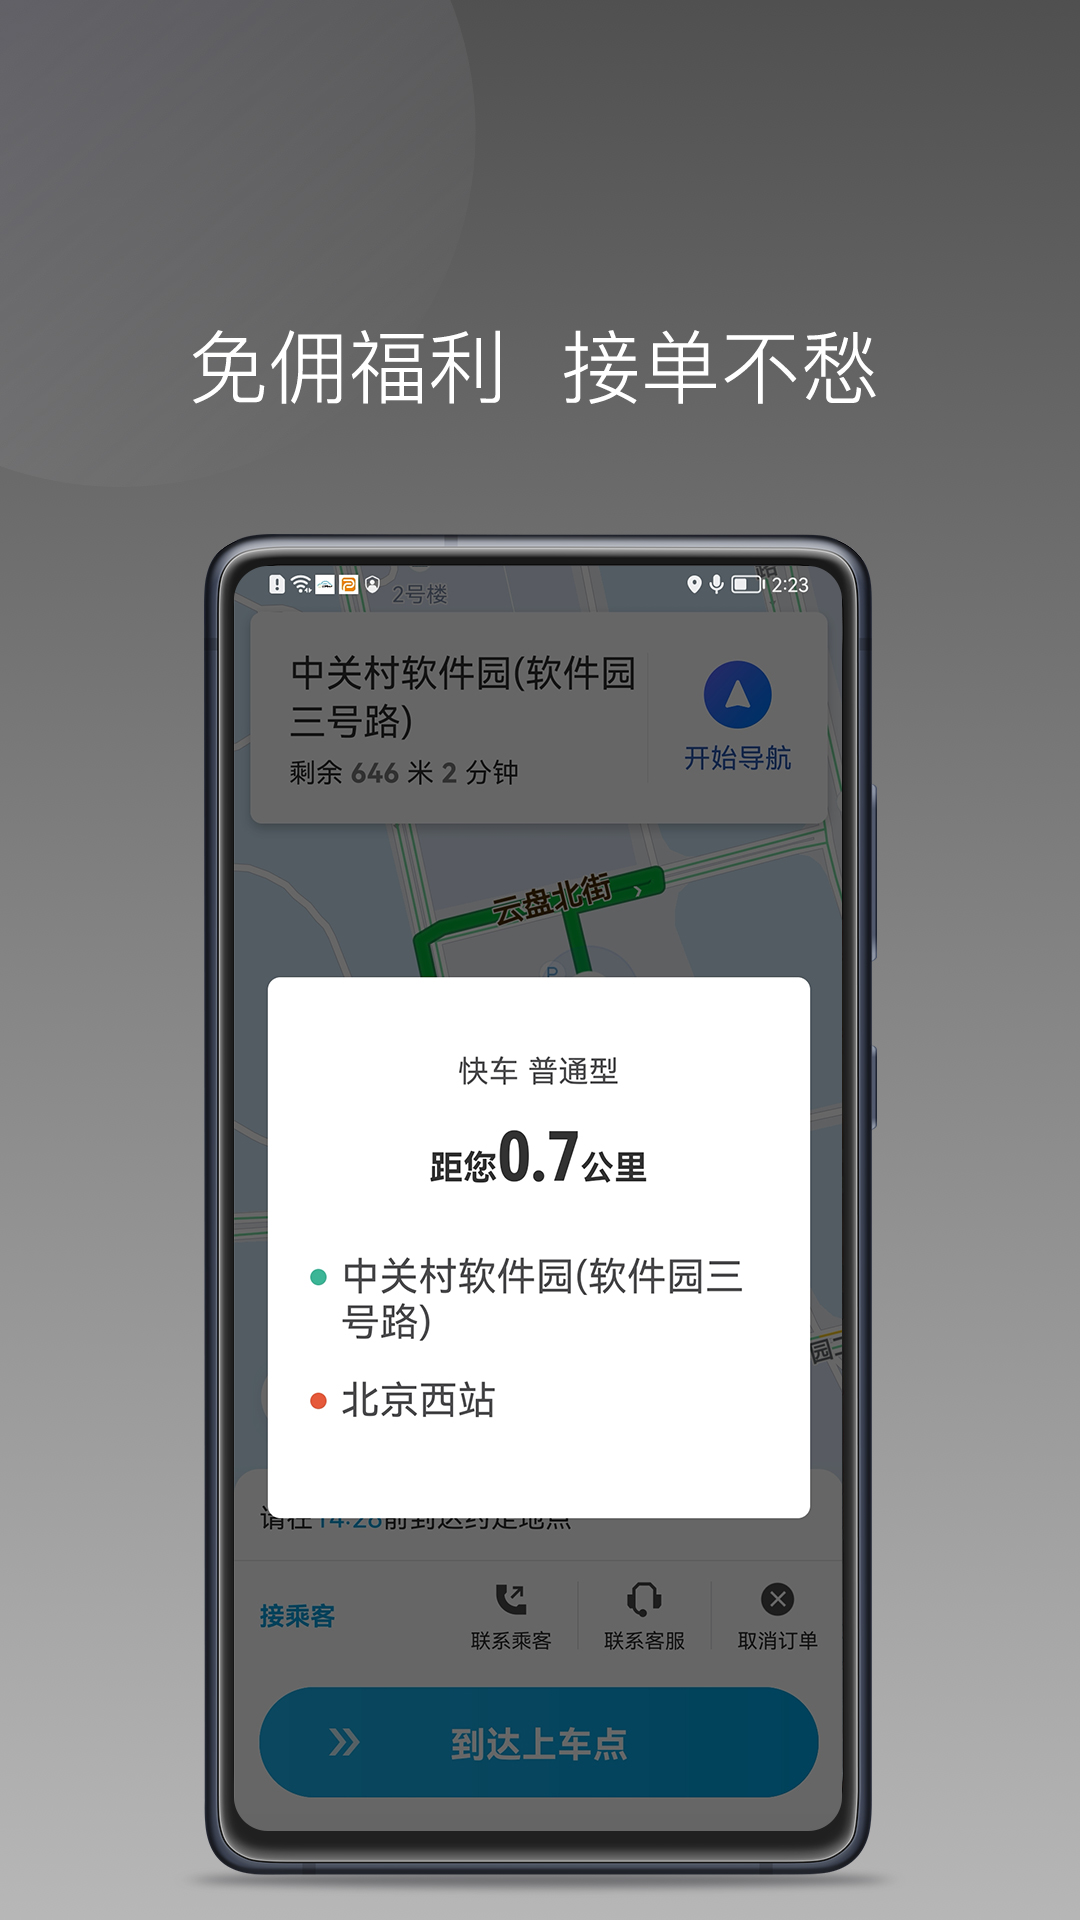 益民出行司机端1.7.0版本app下载老版本图4: